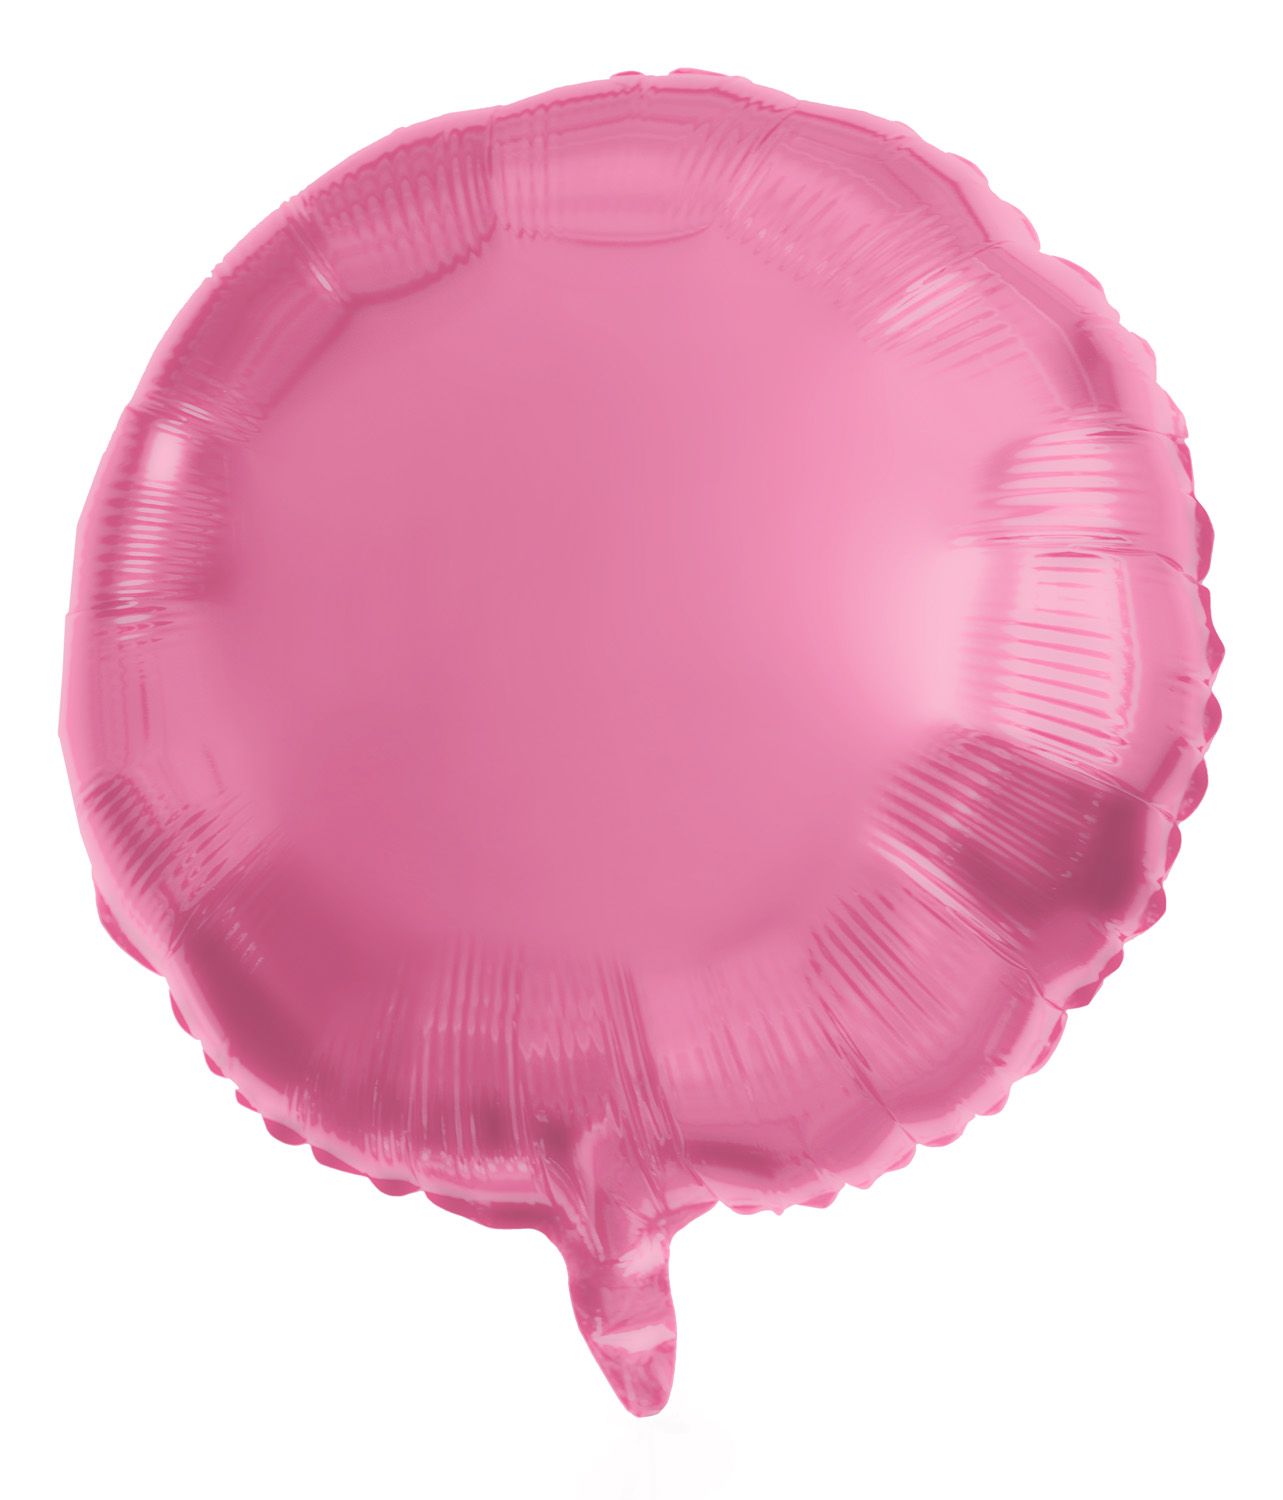 Folieballon roze metallic rond